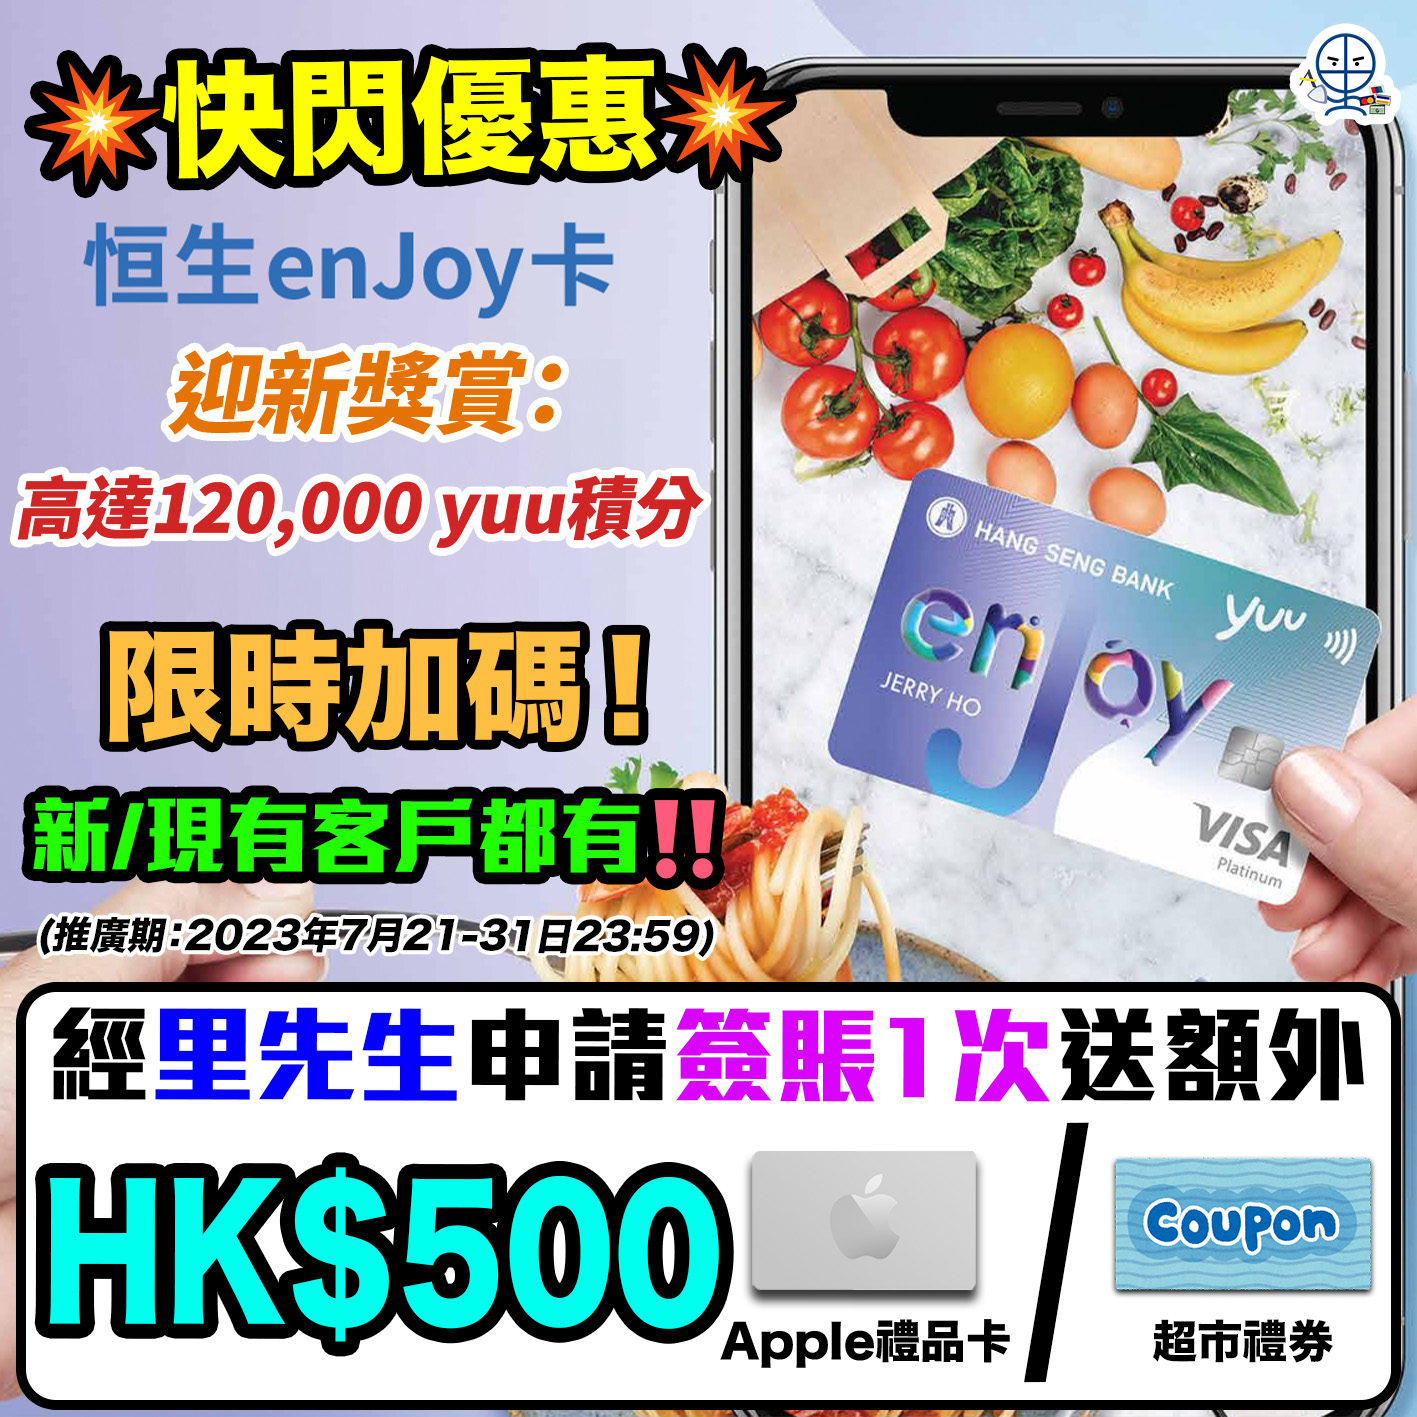 恒生enJoy卡優惠送HK$500】7月加碼限時快閃+升級迎新獎賞總值高達HK